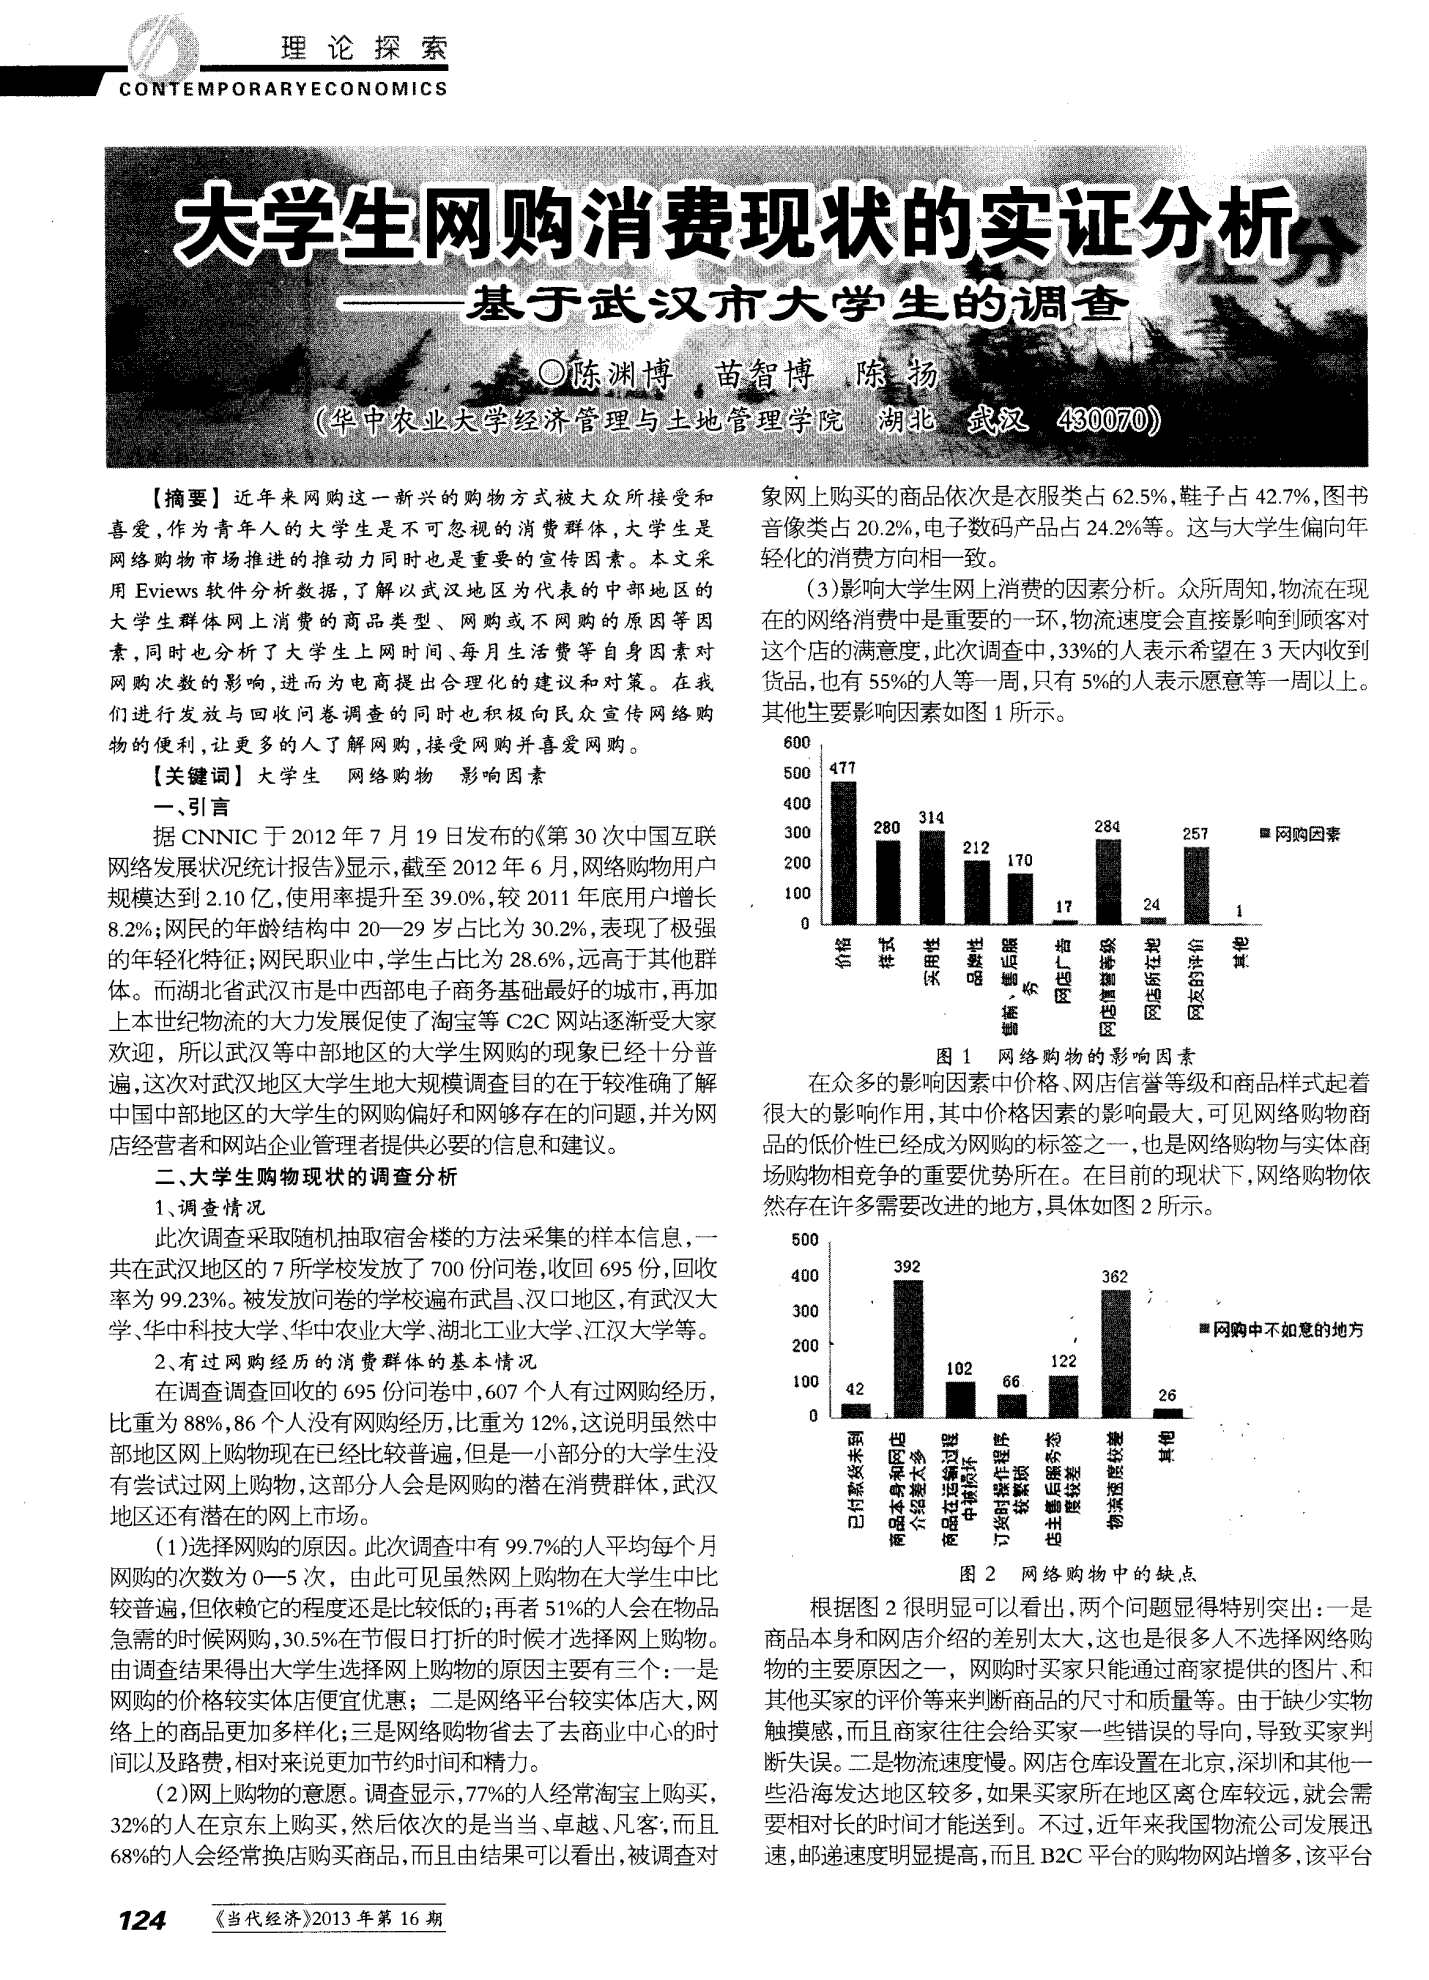 大学生网购消费现状的实证分析——基于武汉市大学生的调查